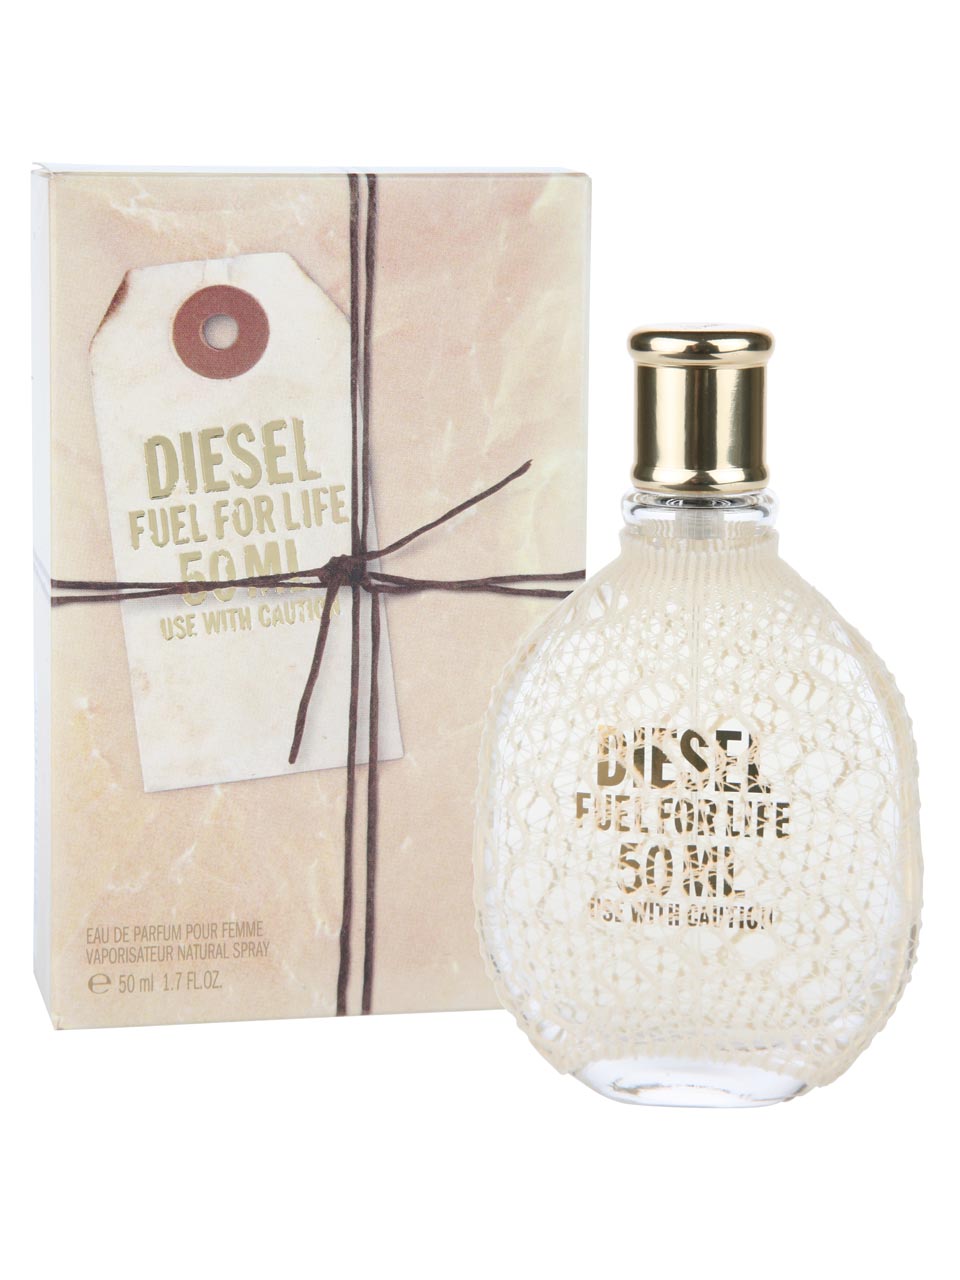 Diesel Fuel for Life Femme Eau de Parfum 50 ml null - onesize - 1